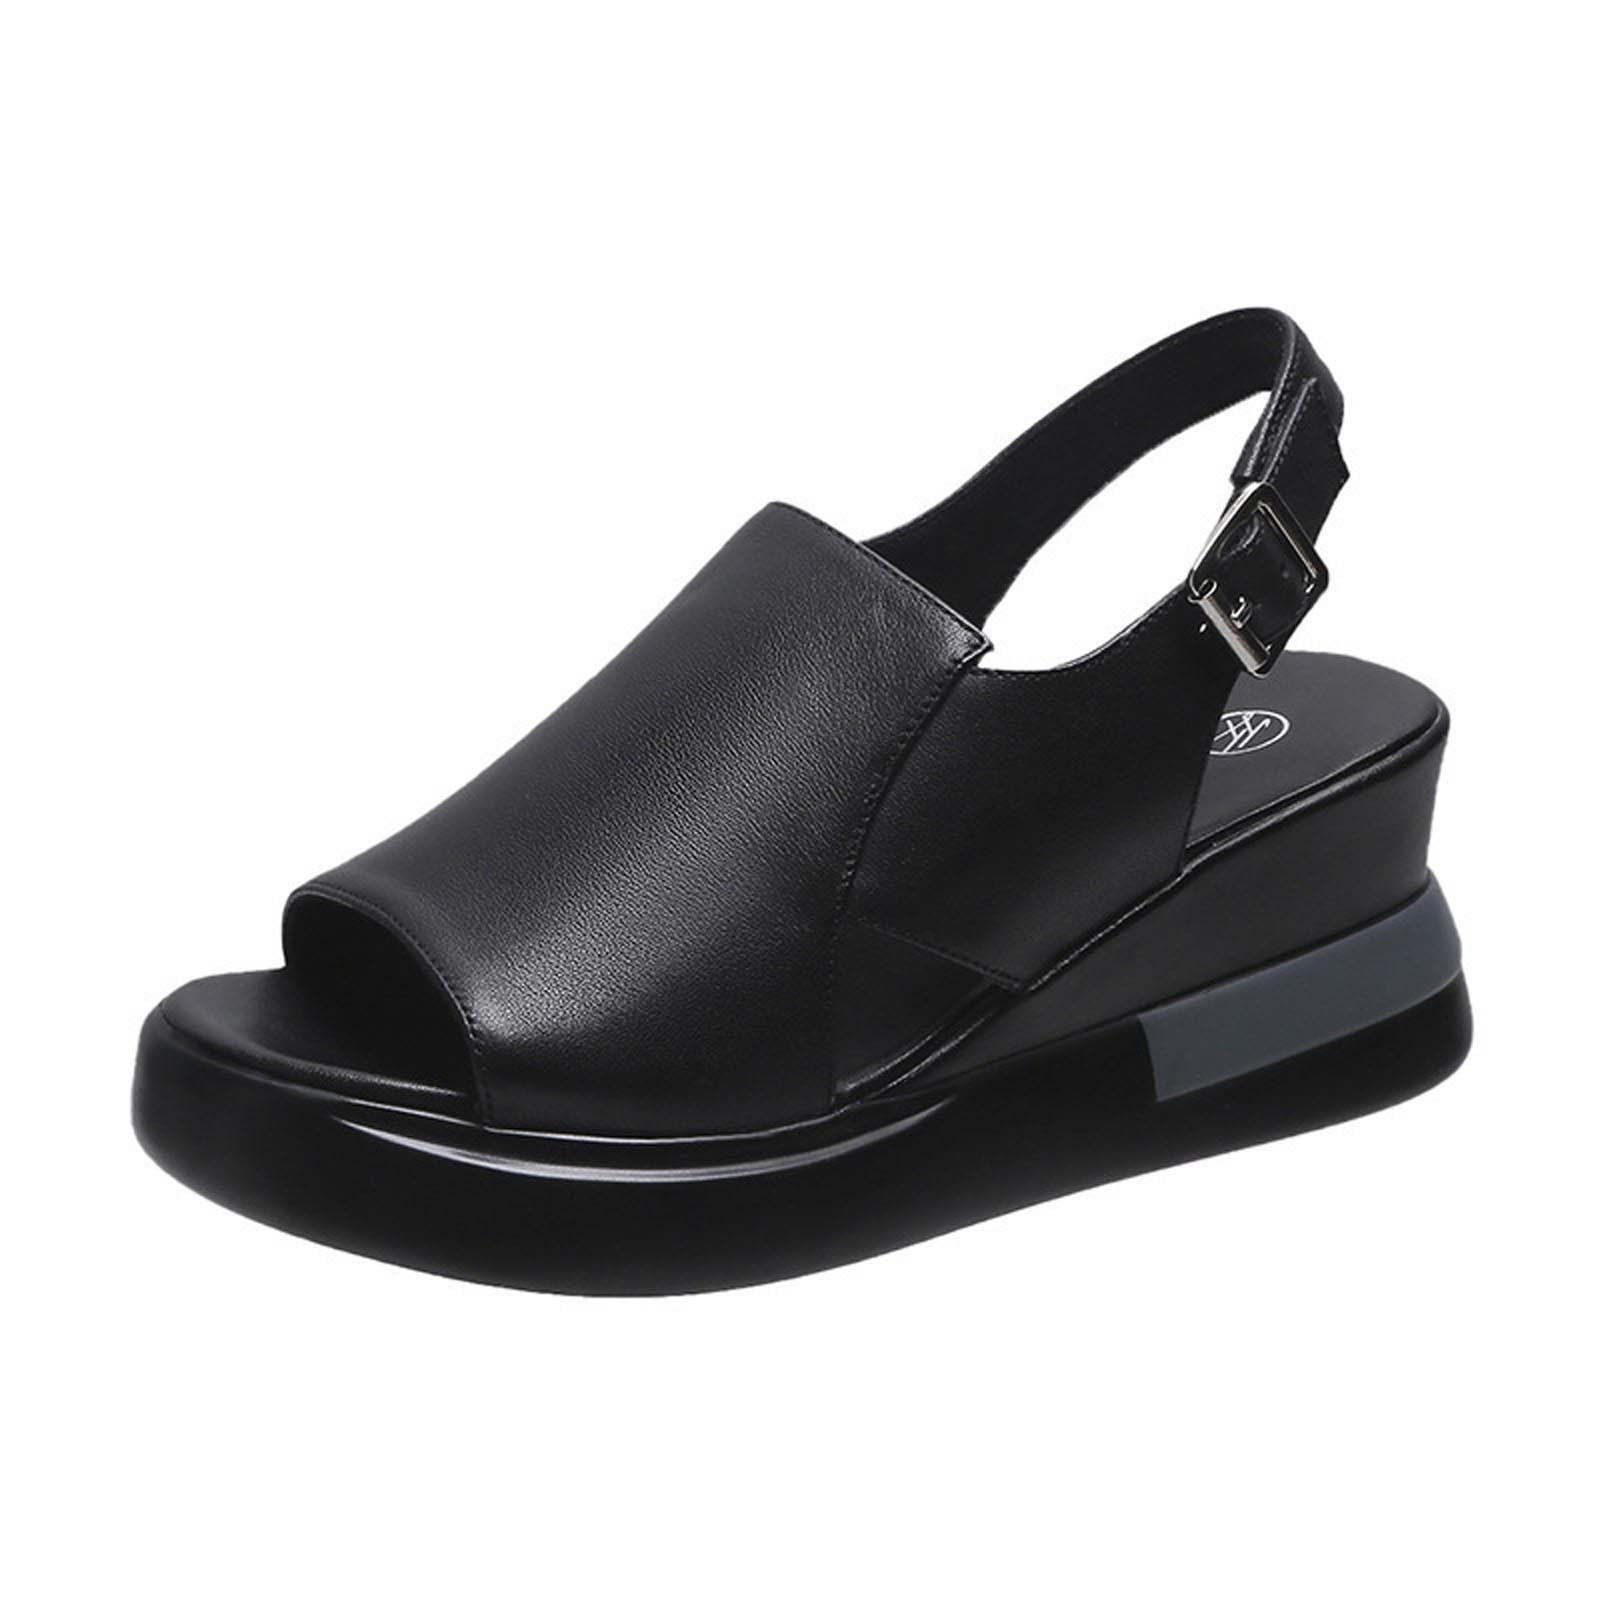 Wedge-heeled leather sandals - Black - Ladies | H&M IN